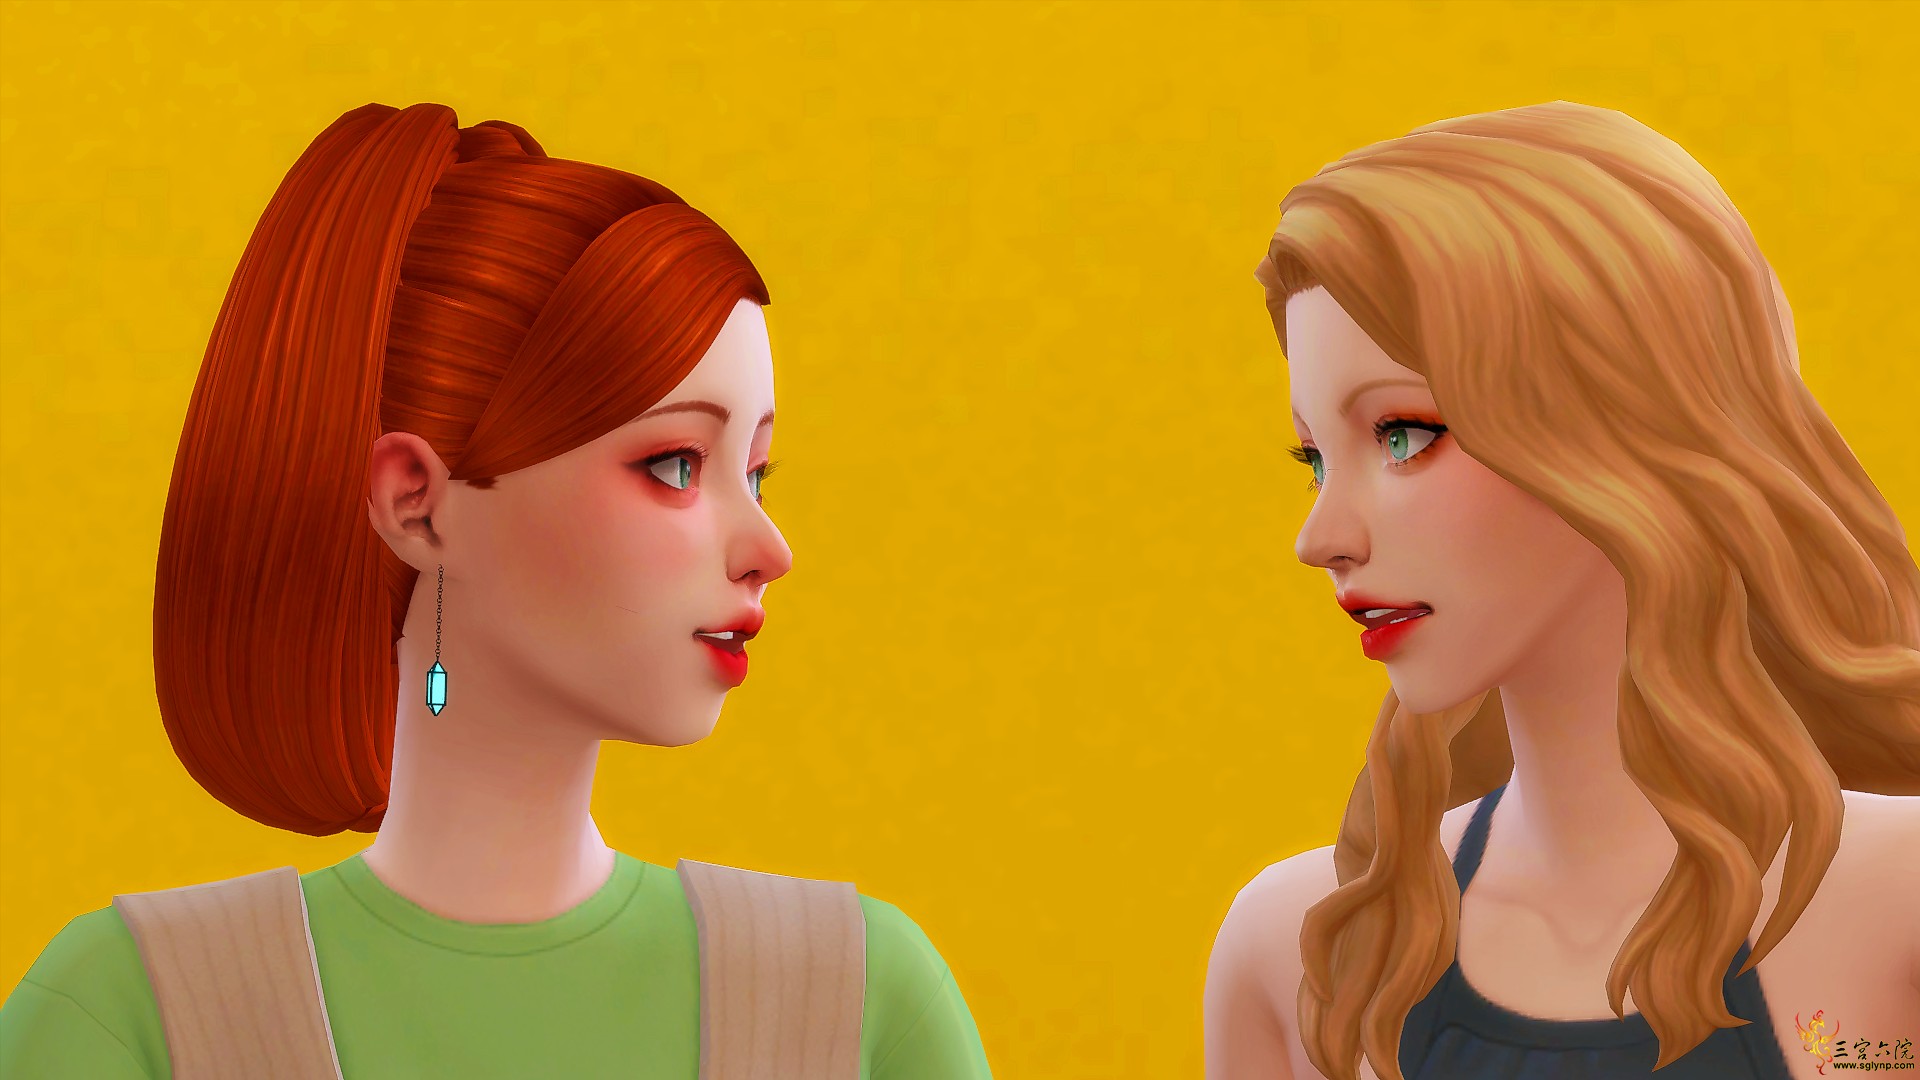 Sims 4 Screenshot 2020.11.19 - 20.37.15.65_.png